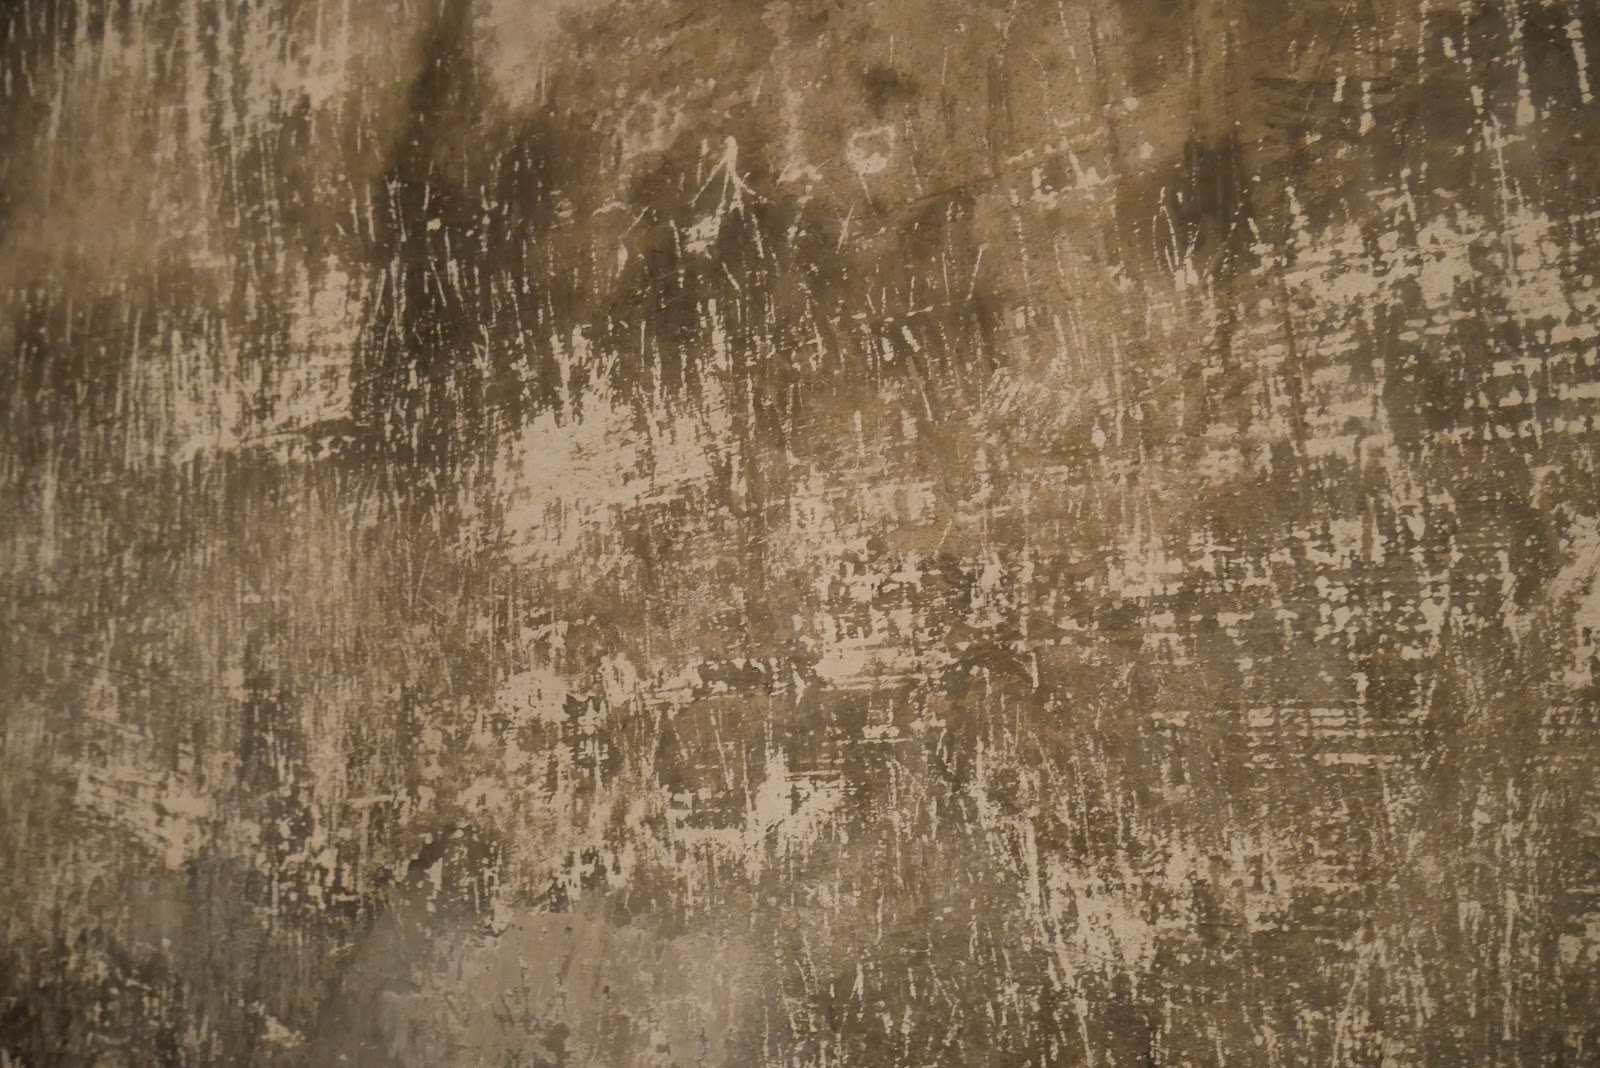 Detall de la paret d'una de les cambres de gas on s'observa les marques de les ungles de les víctimes